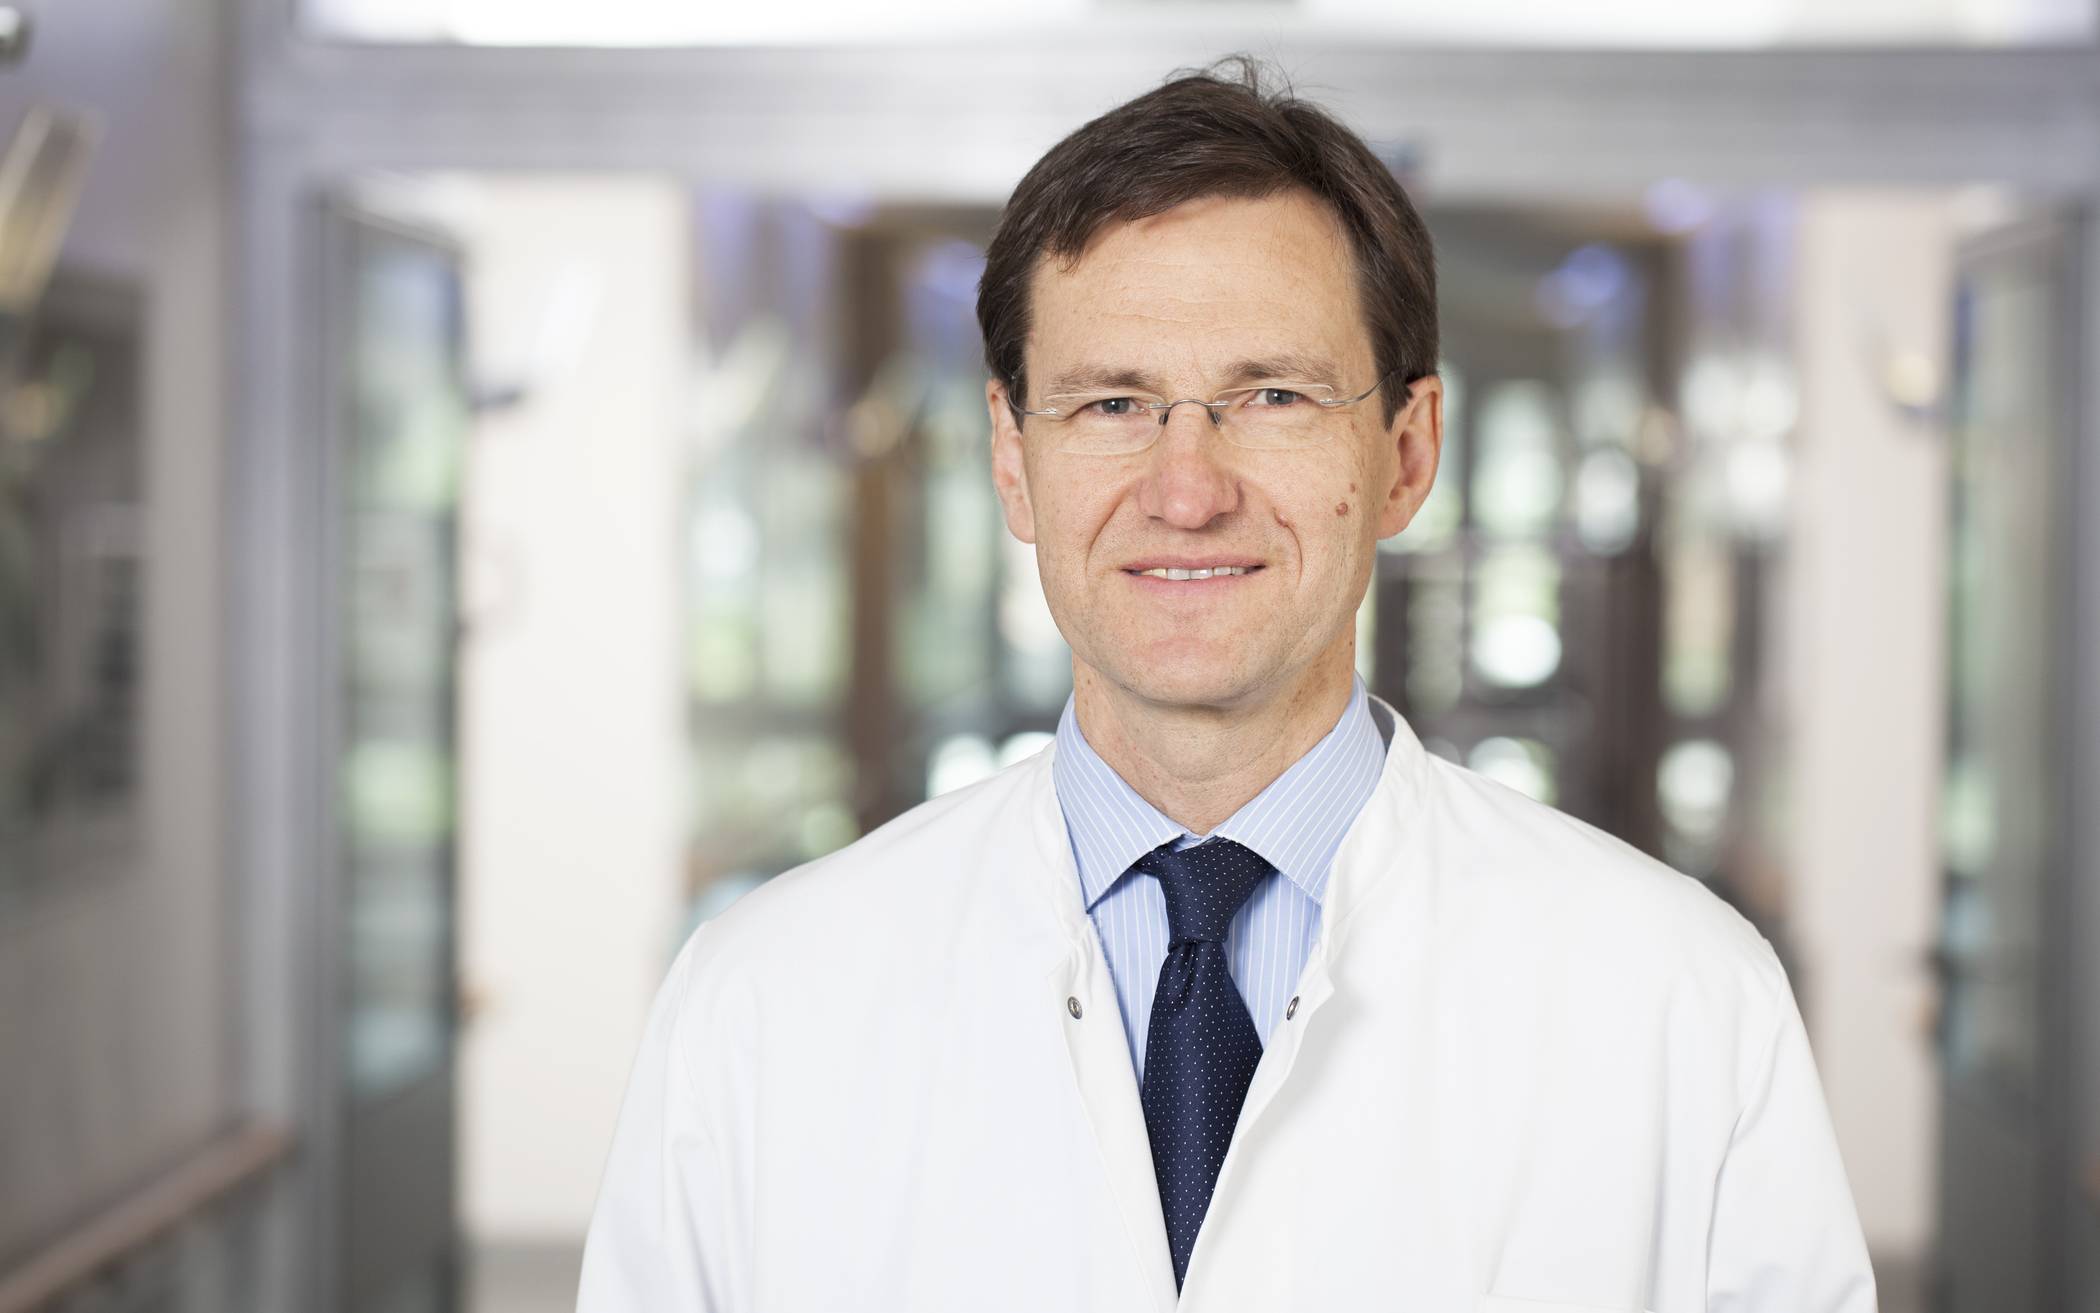 Prof. Dr. med. Bernd Sanner ist Ärztlicher Direktor und Chefarzt der Medizinischen Klinik mit zertifiziertem Bluthochdruckzentrum am Agaplesion-Bethesda-Krankenhaus Wuppertal und einer der führenden Hypertonie-Spezialisten in Deutschland. 